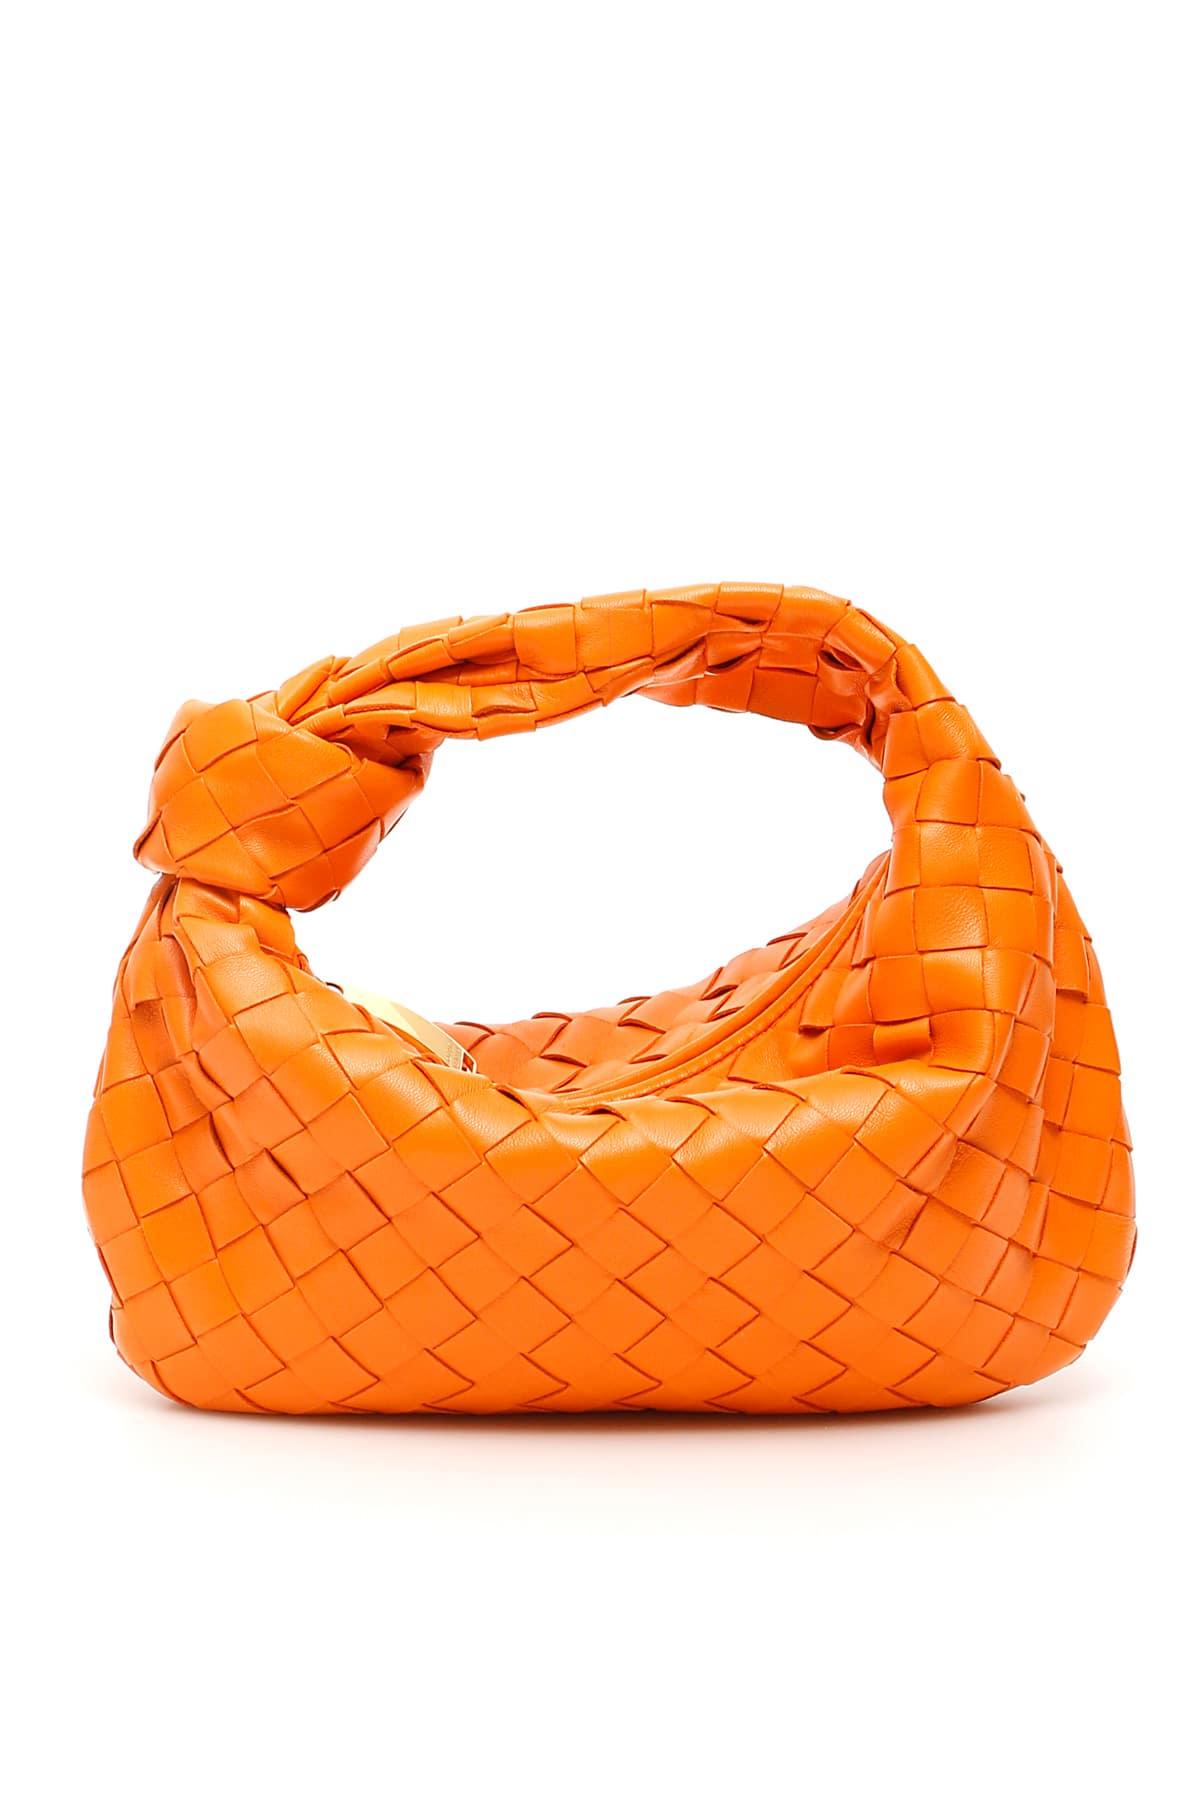 Bottega Veneta Mini Jodie Bag in Orange